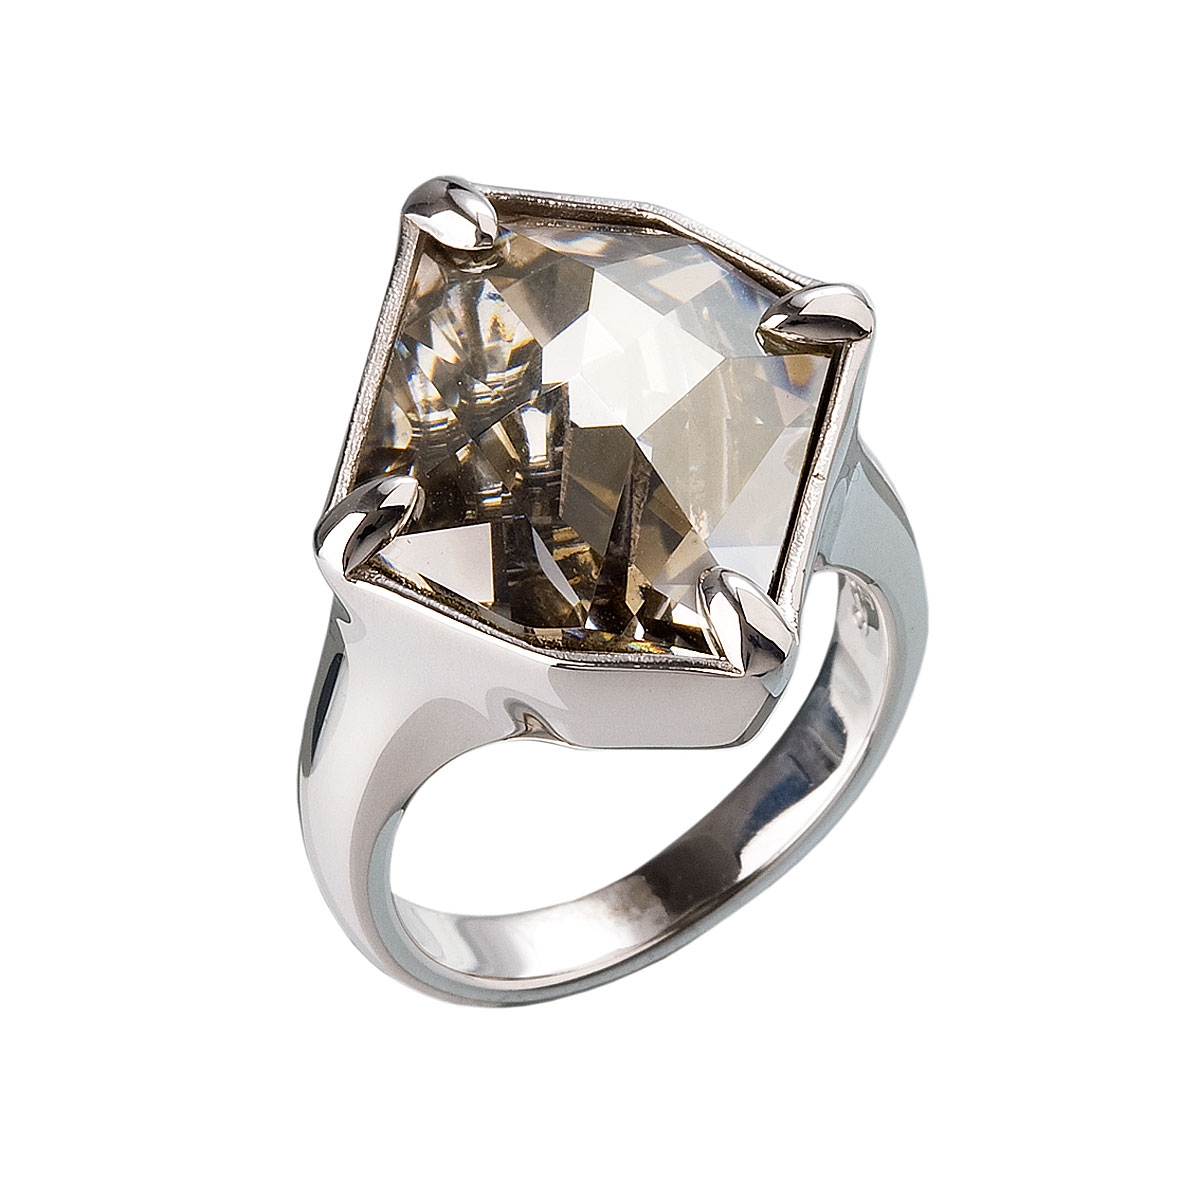 Strieborný prsteň s kameňom Crystals from Swarovski ® Gold